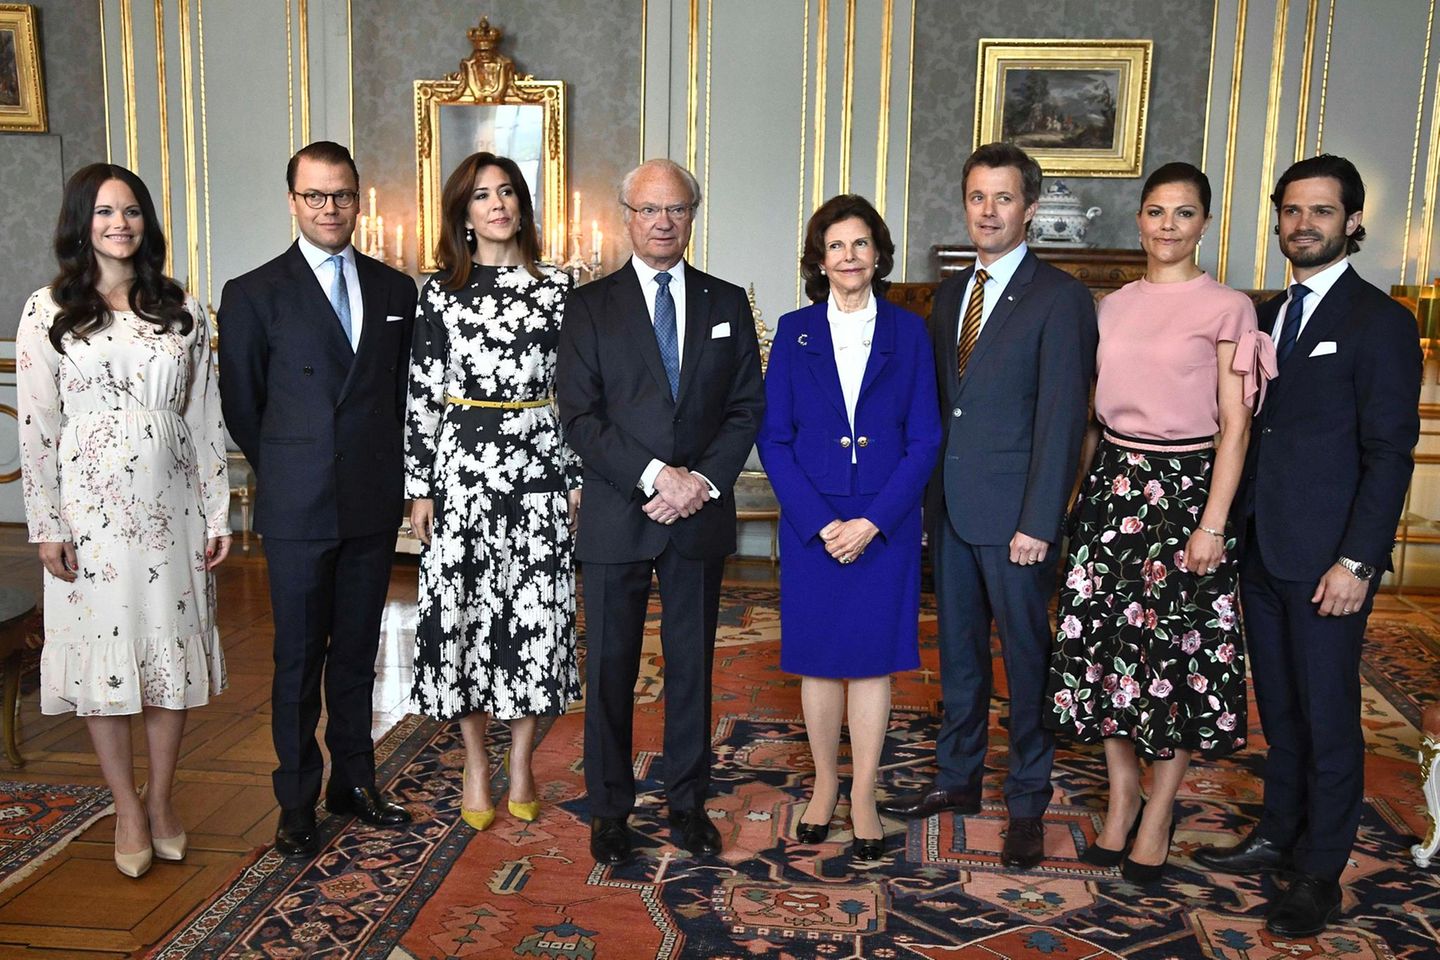 Tag 2  Am Mittag des zweiten Besuchstages geht es ins Schloss, wo König Carl Gustaf, Königin Silvia, Prinz Carl Philip, Prinzessin Sofia, Prinz Daniel und Prinzessin Victoria die Gäste aus Dänemark gemeinsam empfangen.